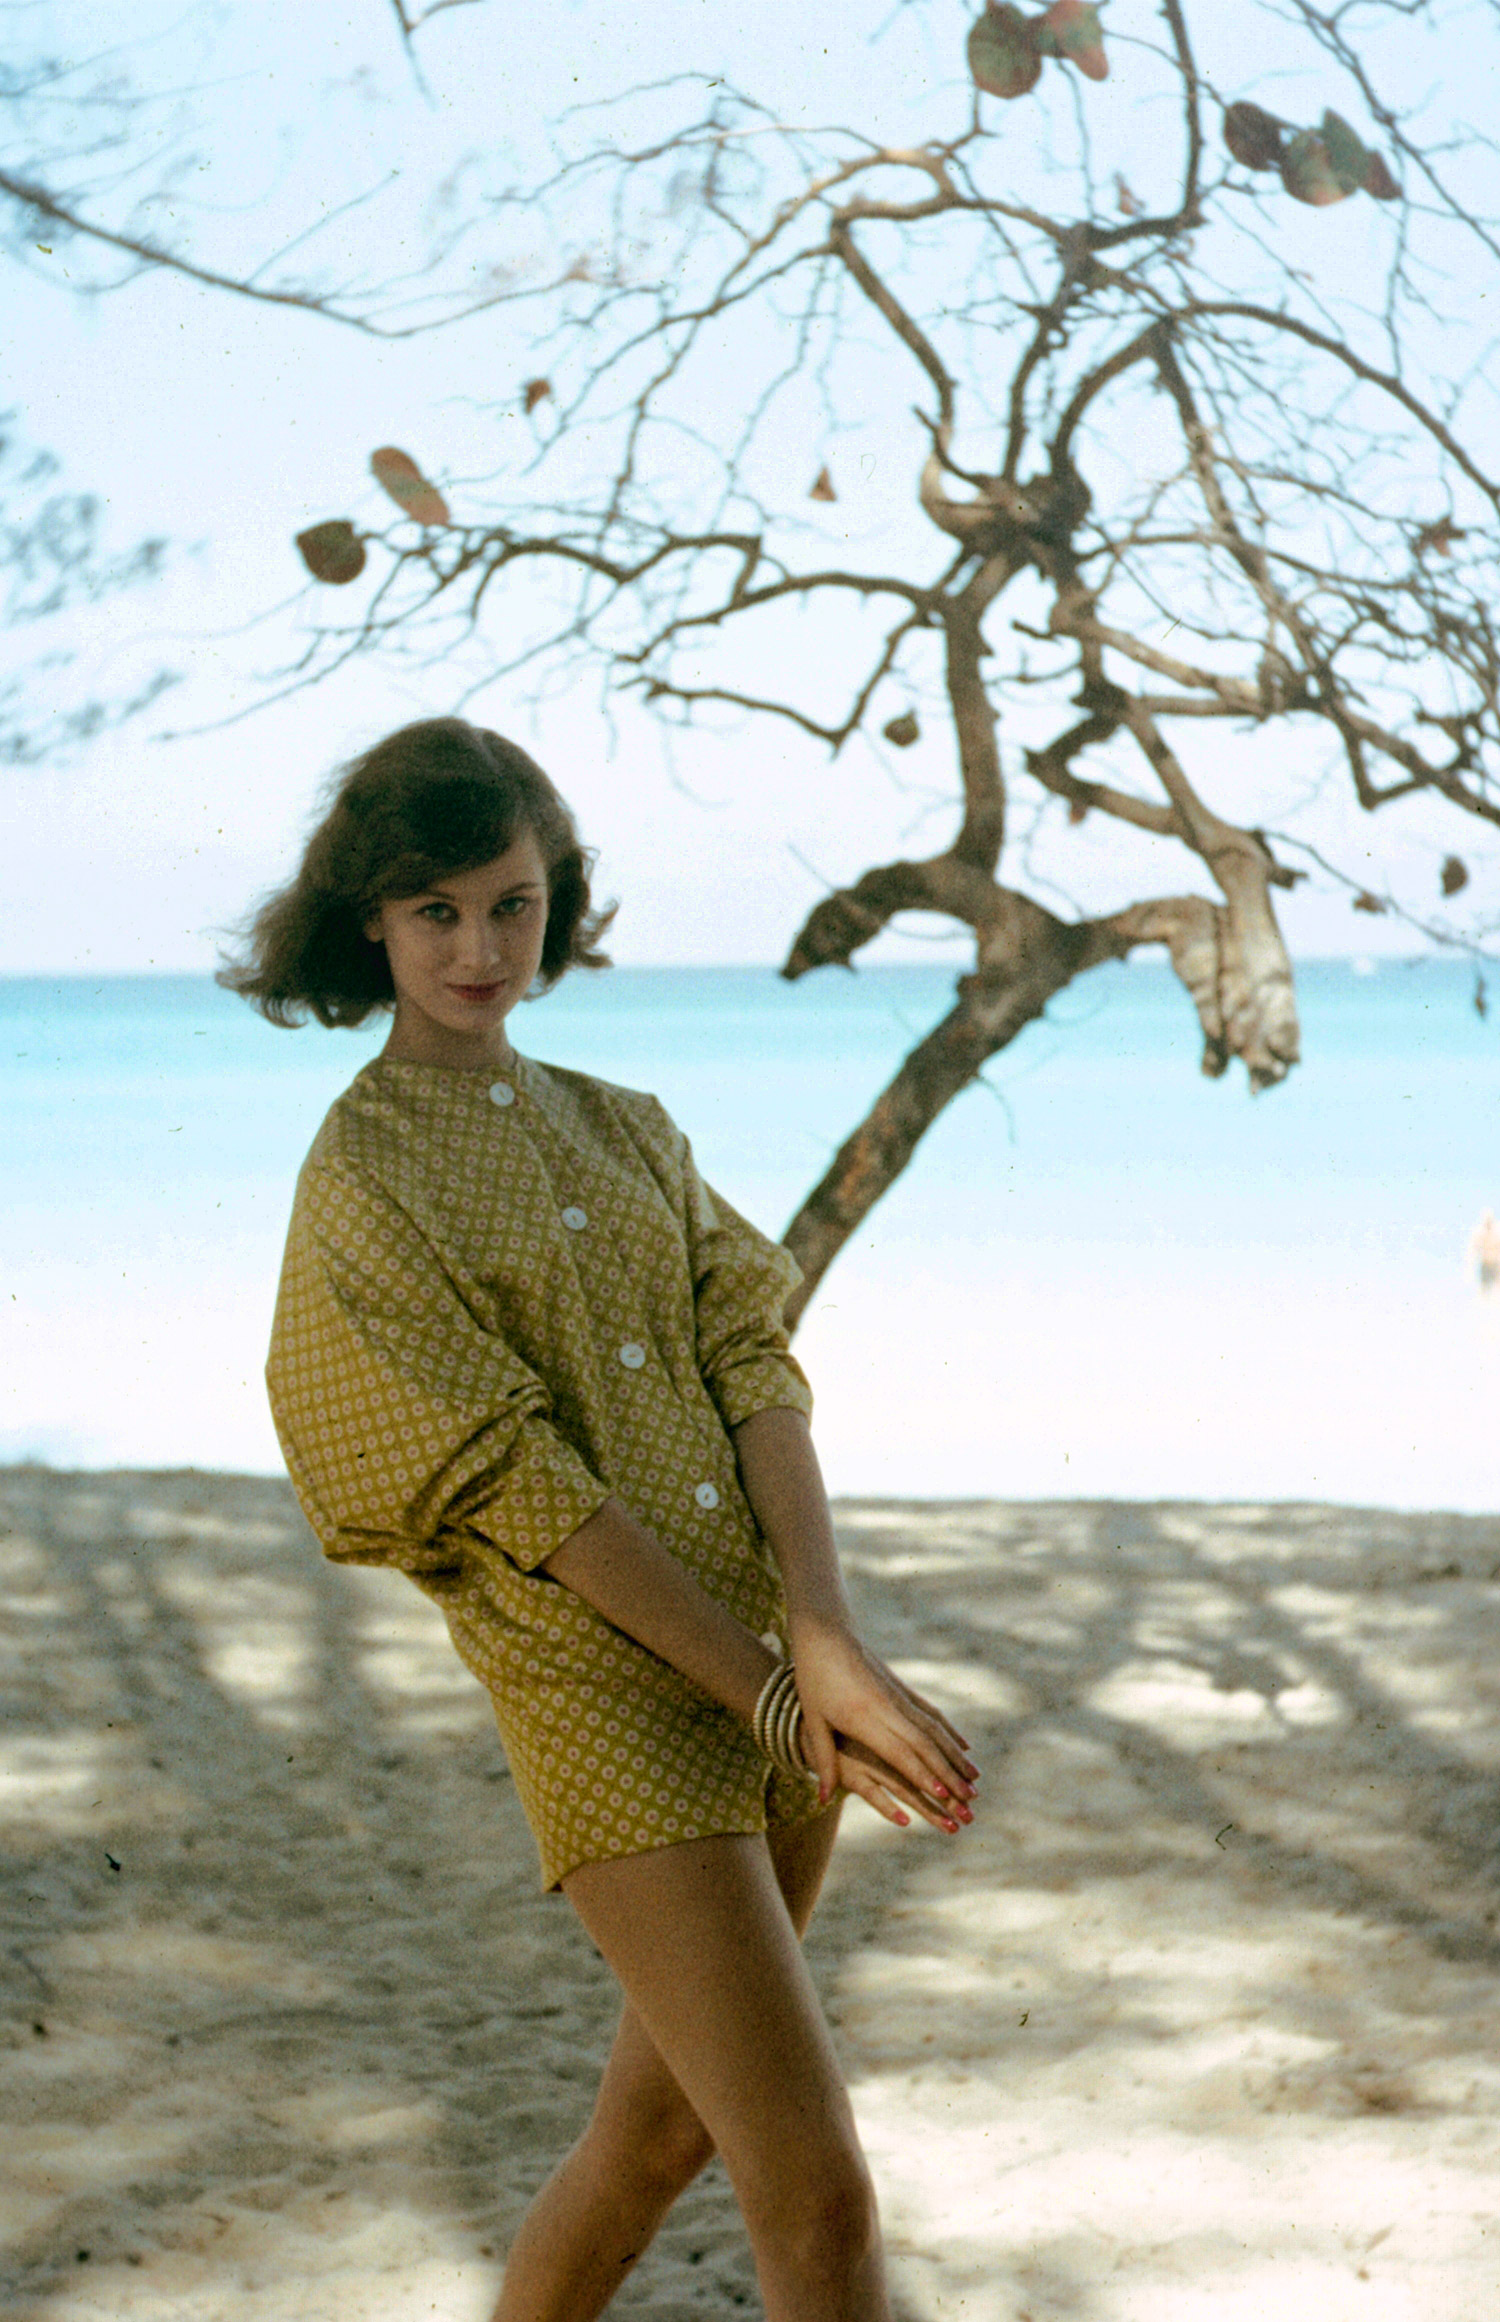 1958 swimwear fashion in Cuba.